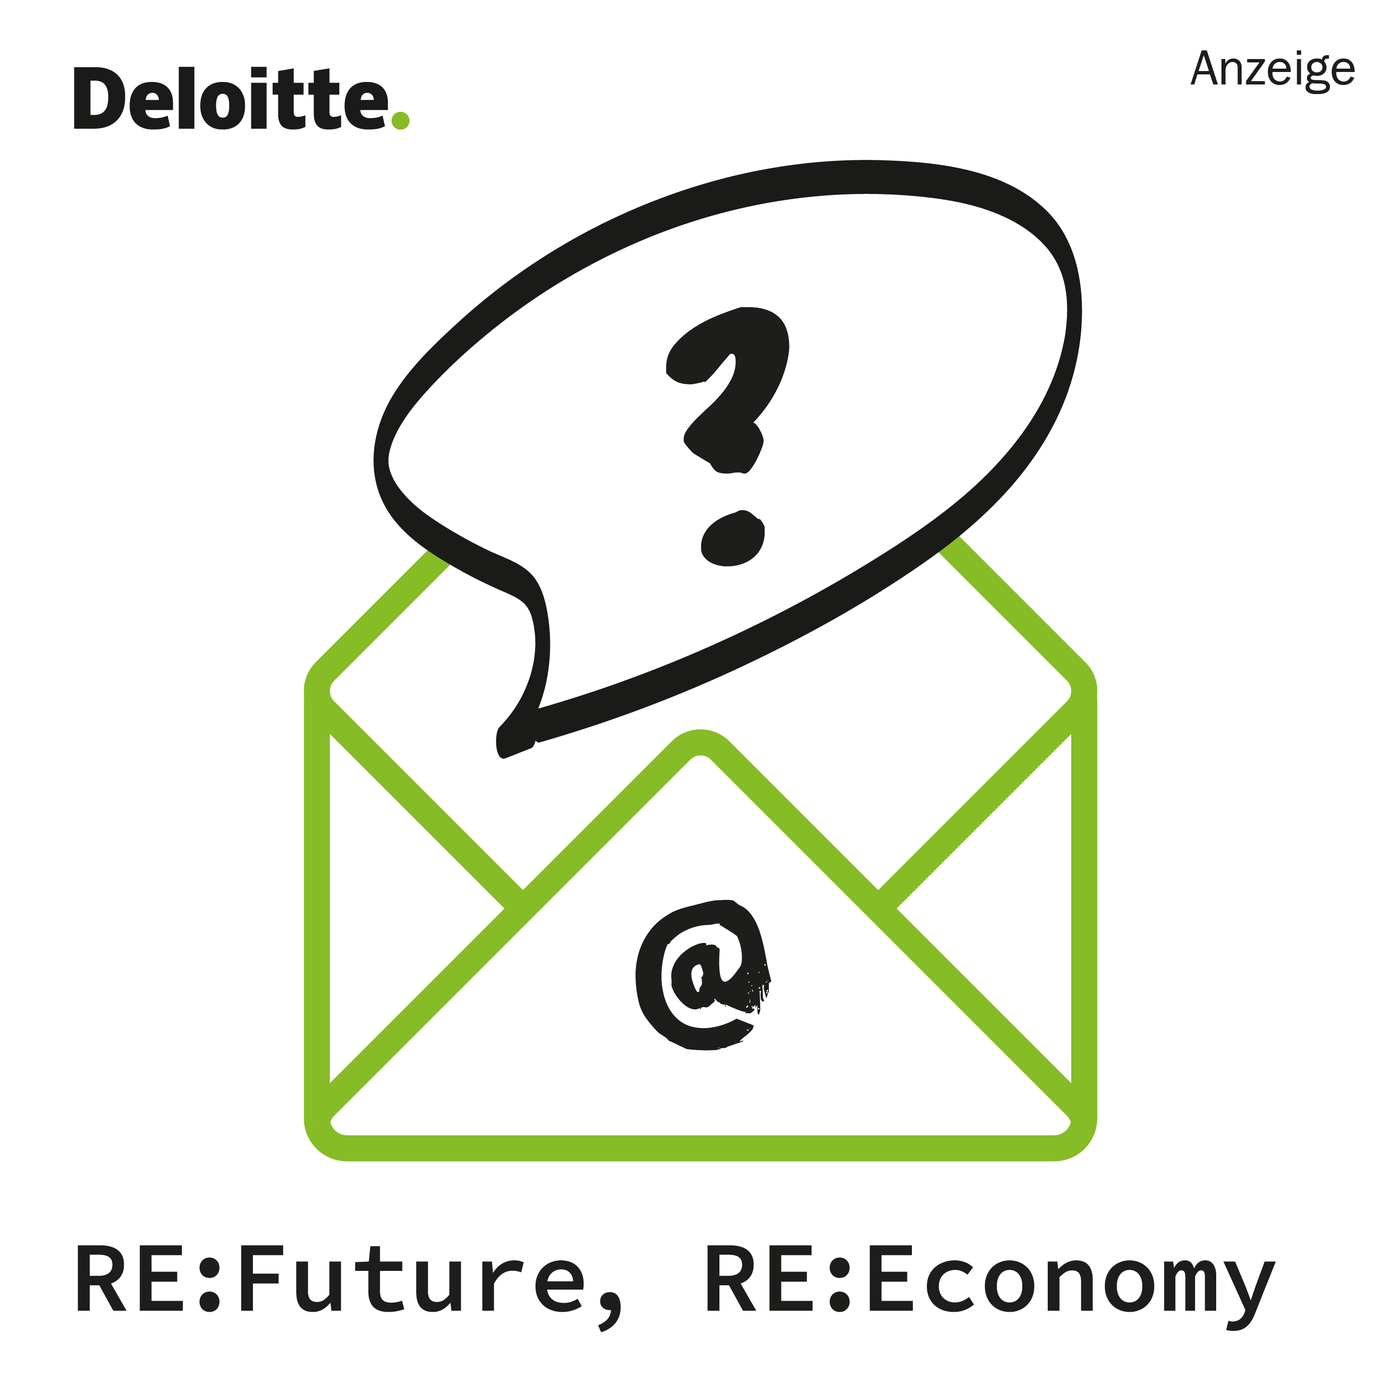 Re:Future. Re:Economy